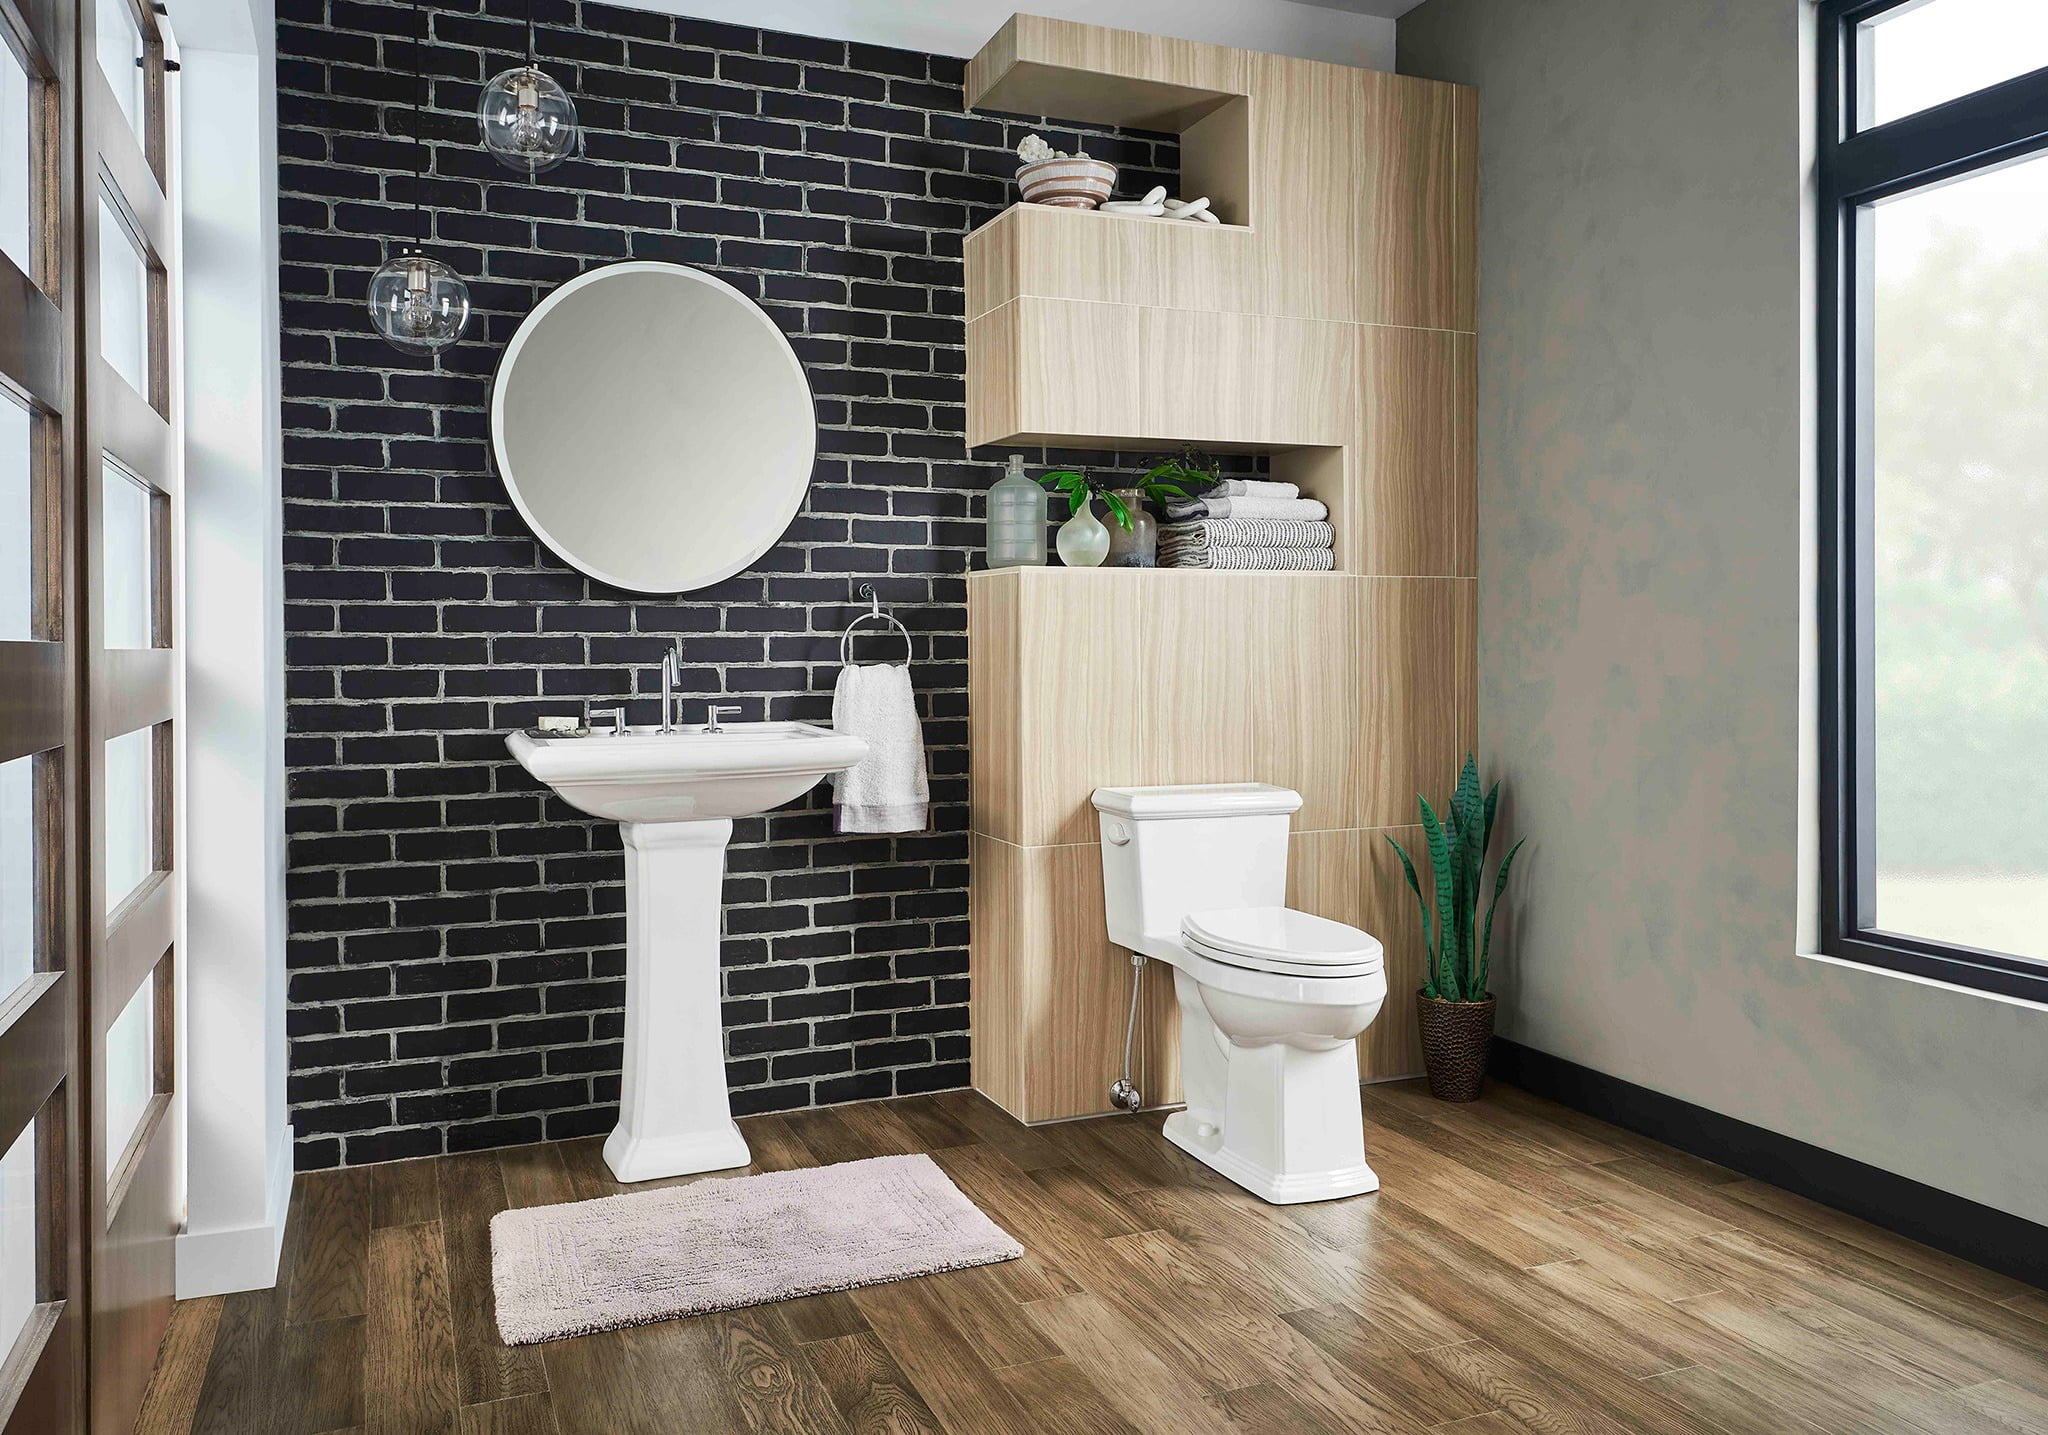 Plumbing fixture, Interior design, Property, Building, Mirror, Wood, Bathroom, Window, Toilet